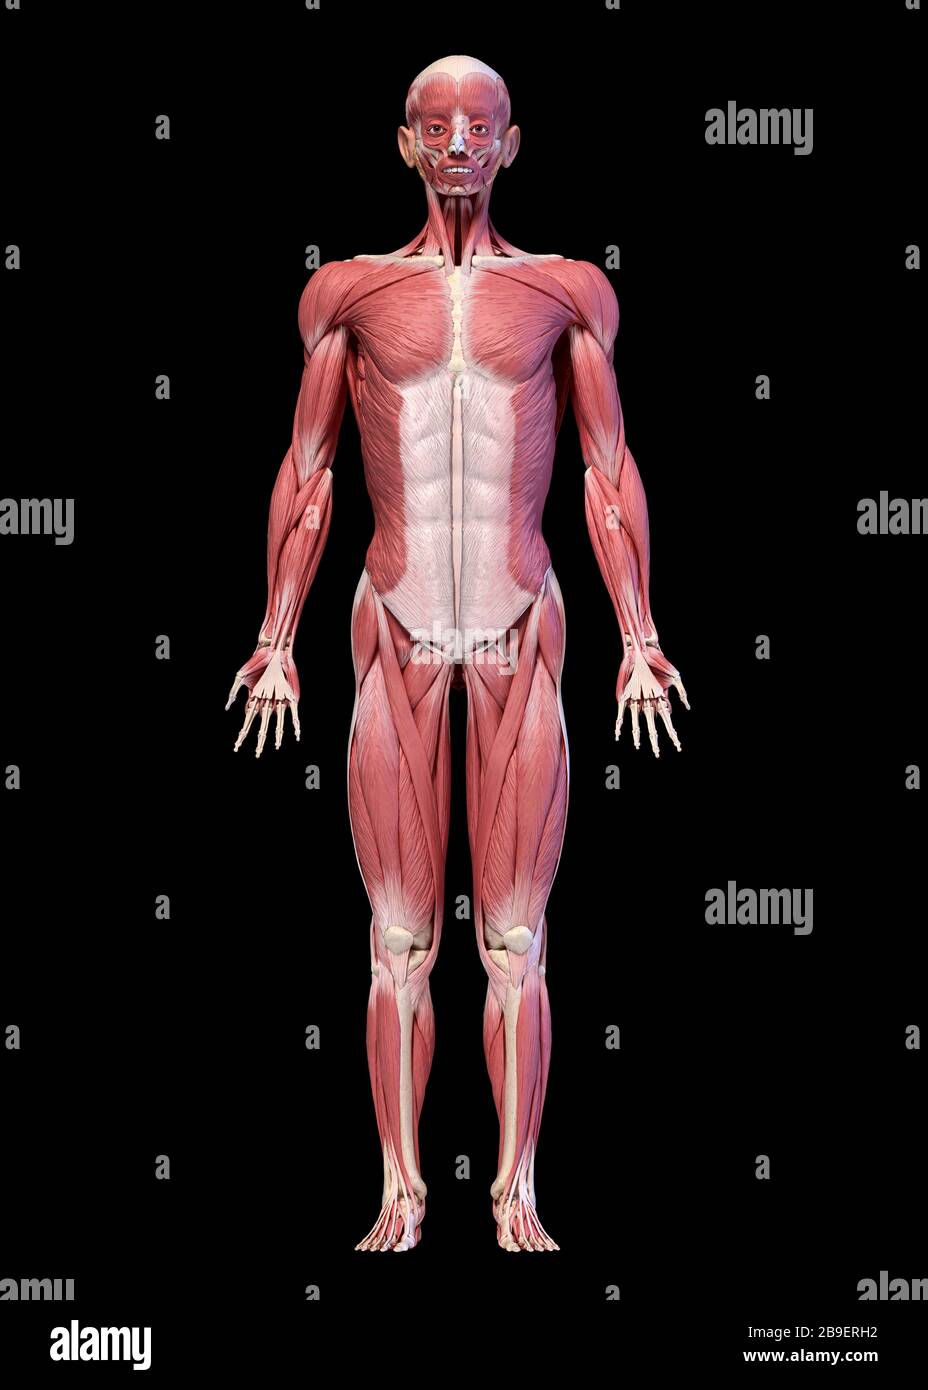 Vollkörperliches männliches Muskelsystem, Vorderansicht, schwarzer Hintergrund. Stockfoto